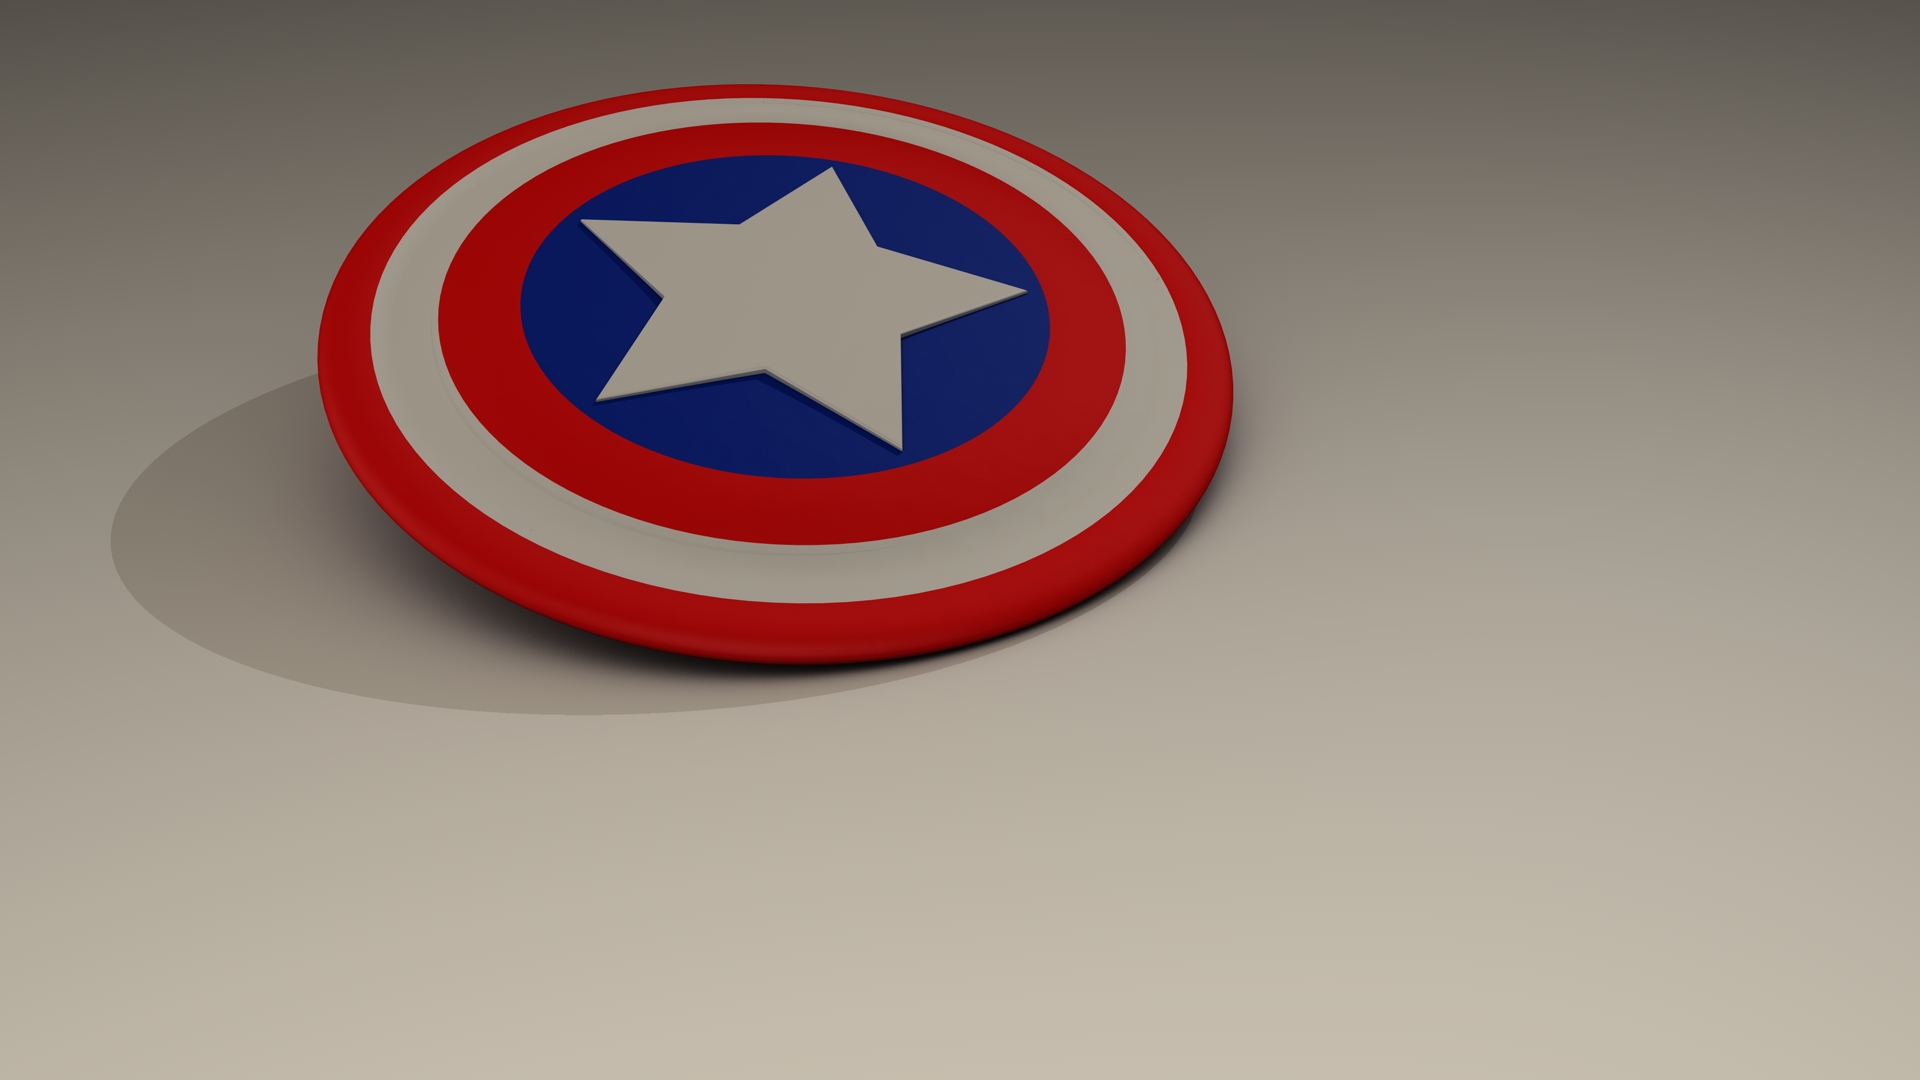 Captain America Shield - 1920x1080 Wallpaper 